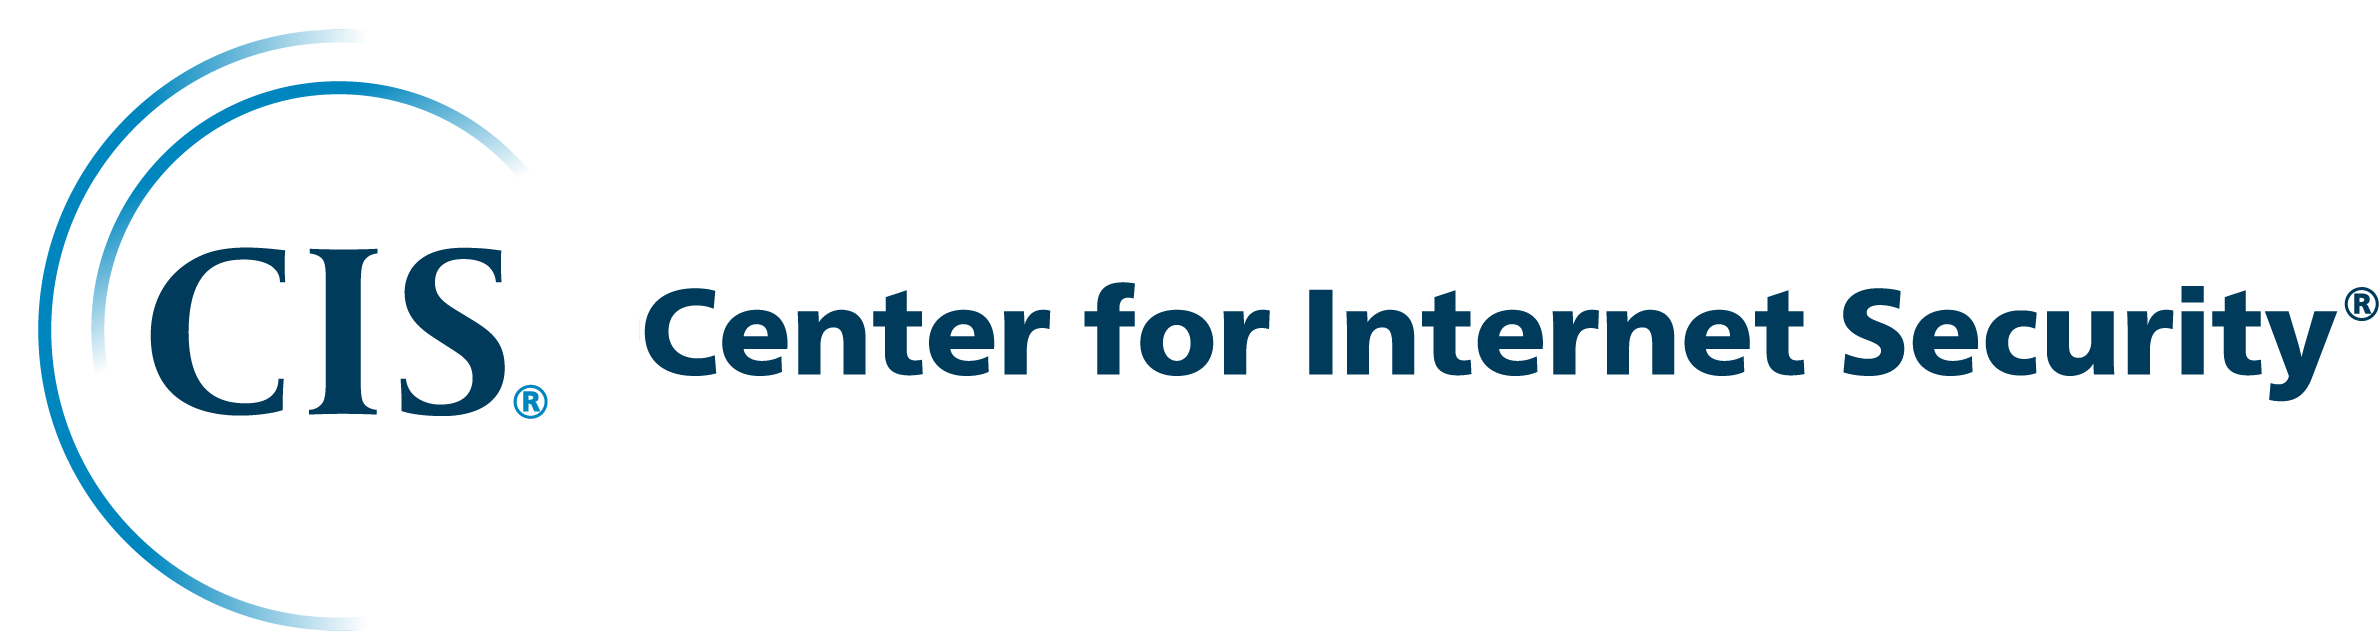 The Center for Internet Security (CIS) logo